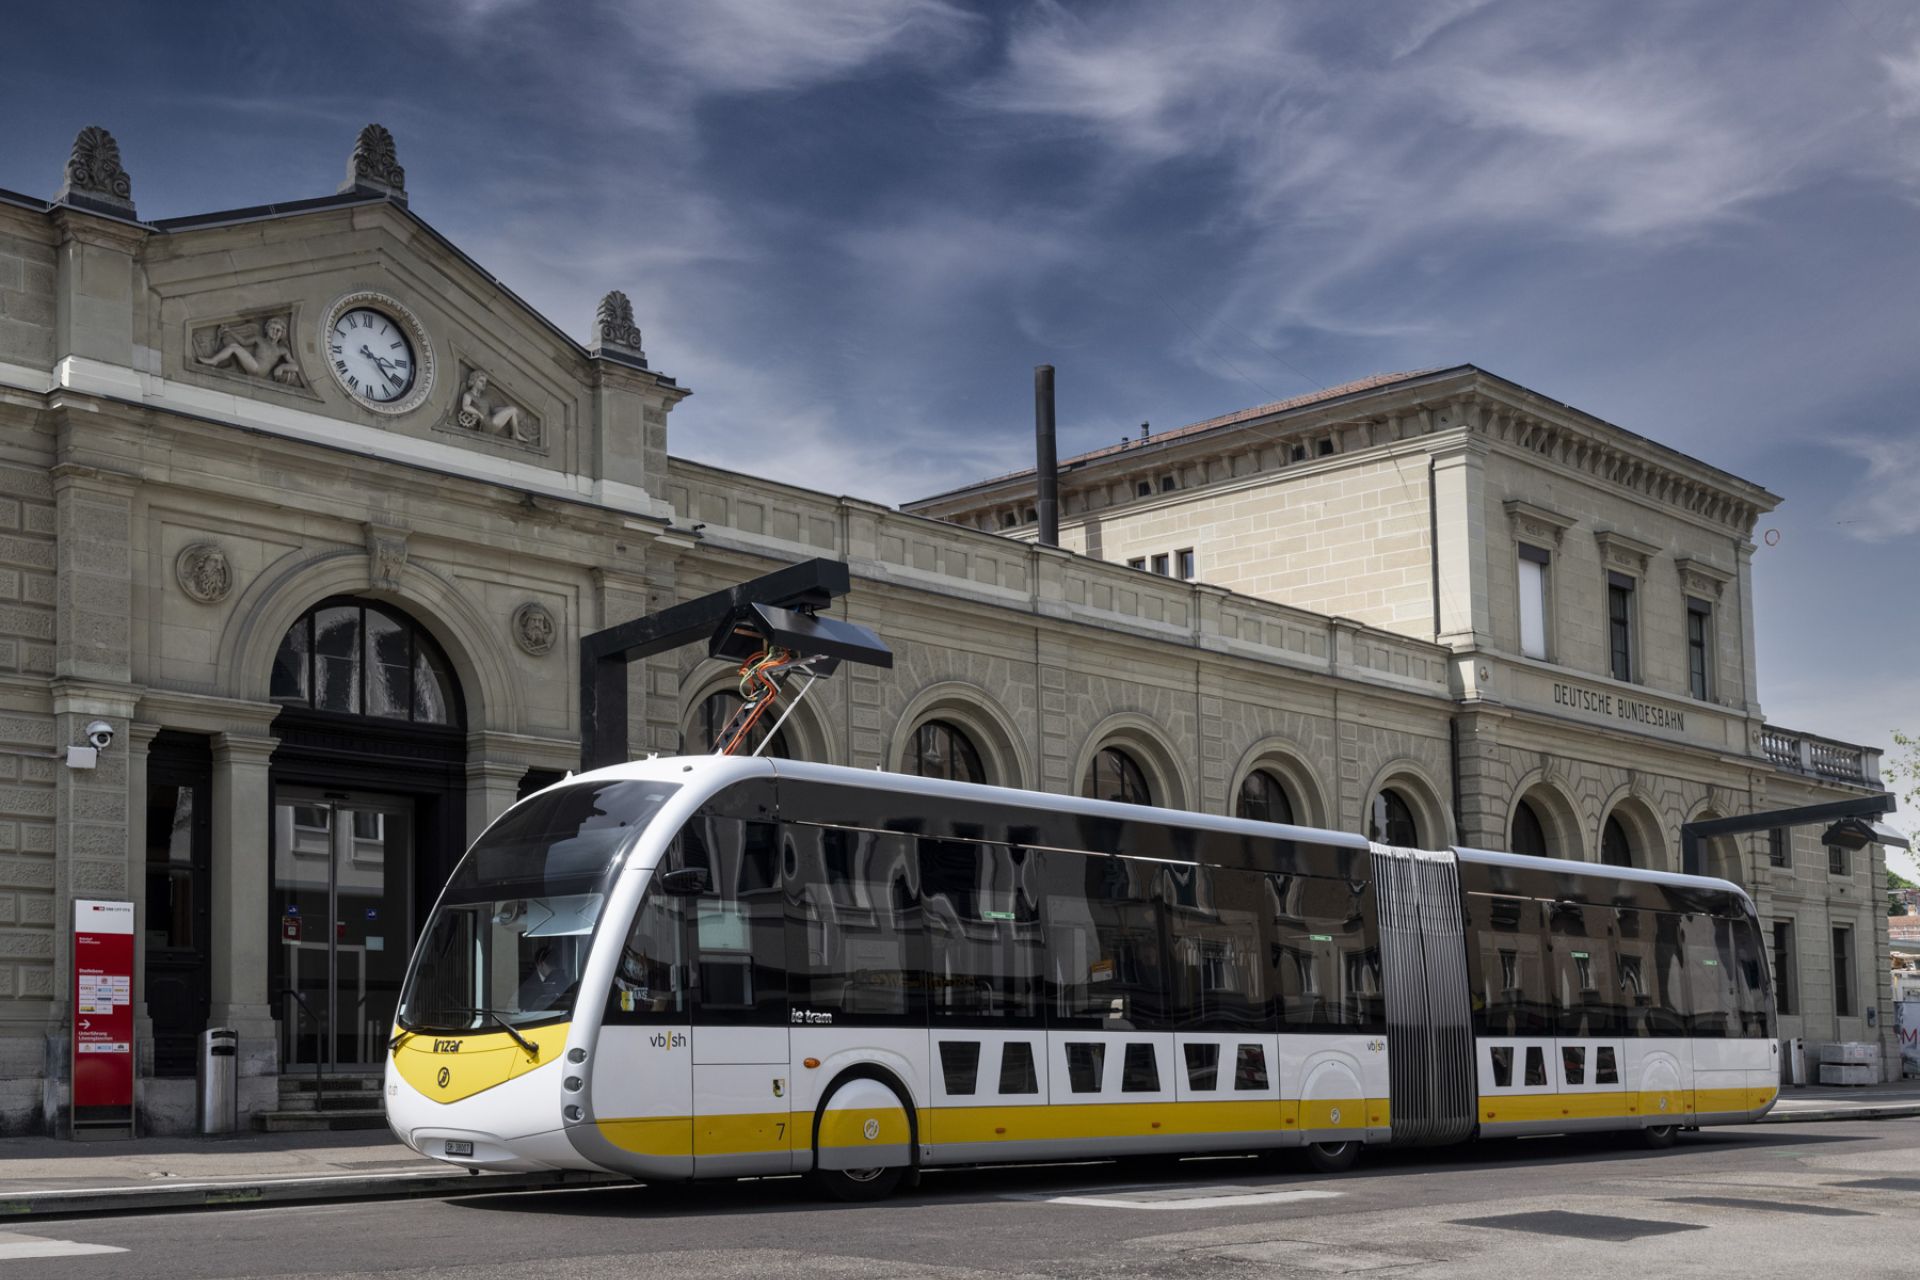 Les bus électriques Irizar ont déjà parcouru plus de 750 000 km et effectué 60 000 recharges ultra-rapides dans la ville suisse de Schaffhouse